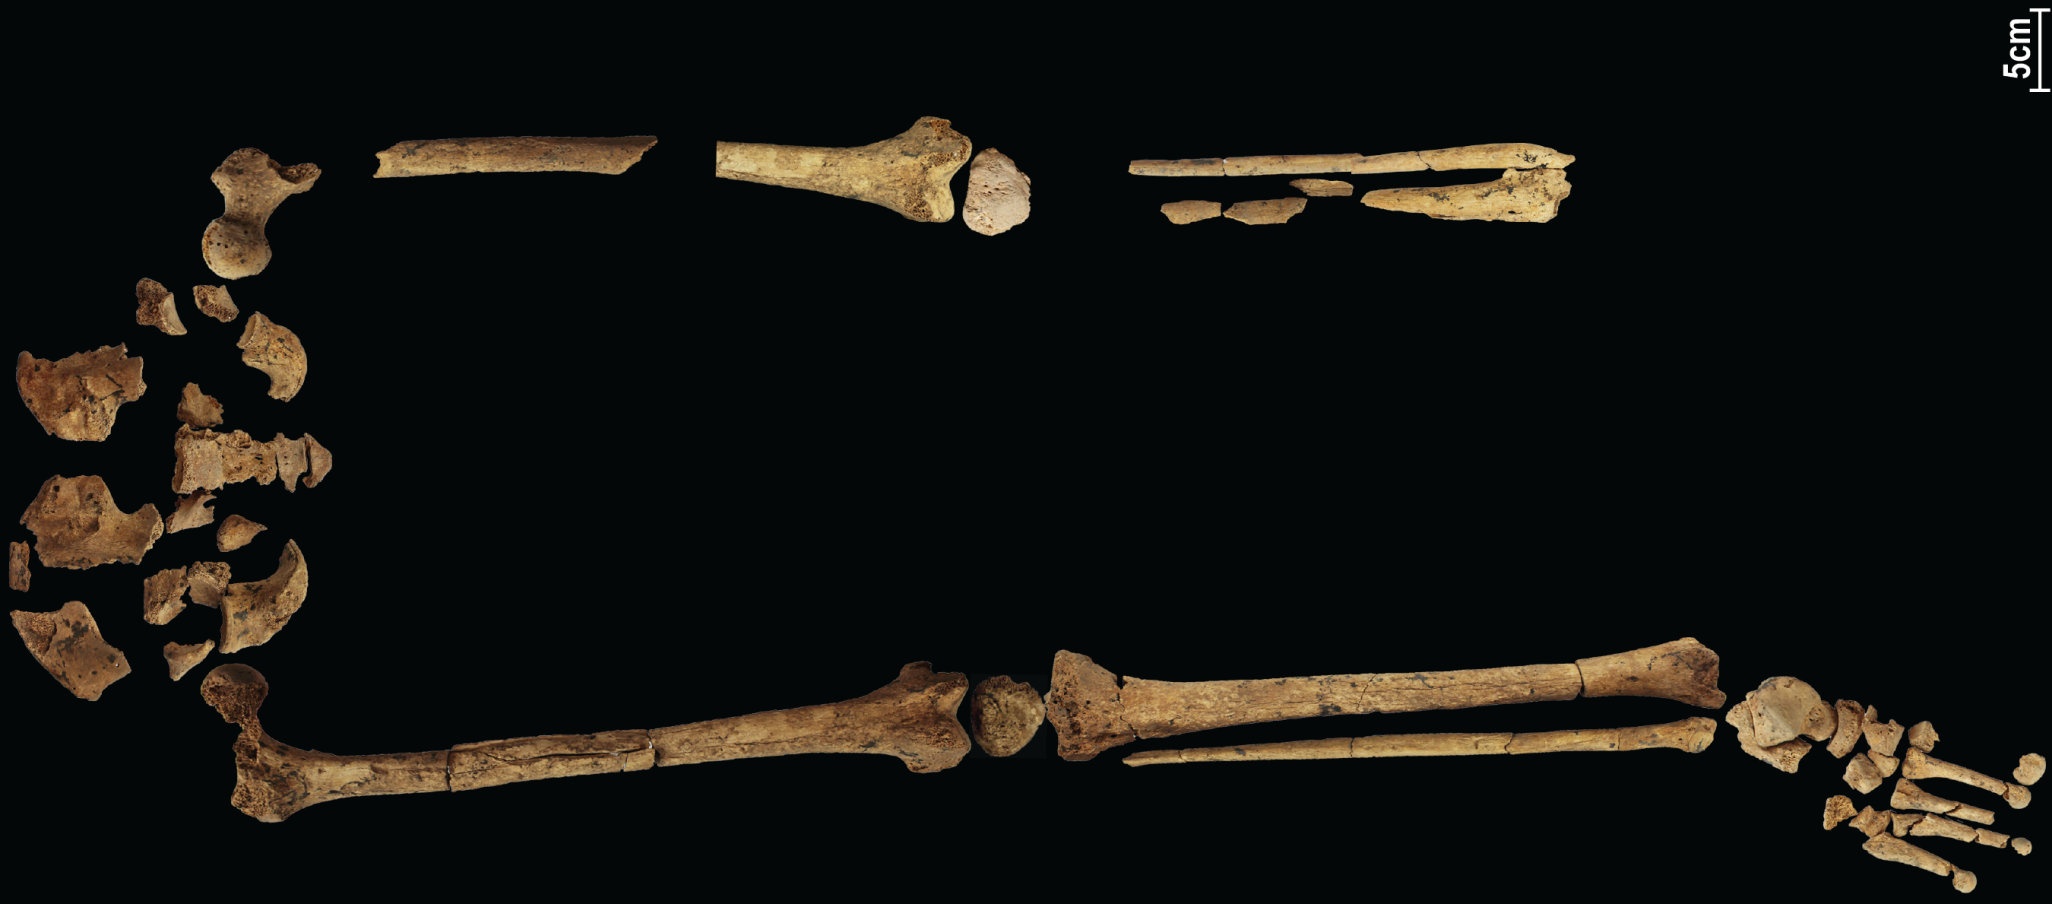 31,000 4 metų senumo skeletas, kuriame buvo atlikta anksčiausia žinoma sudėtinga operacija, gali perrašyti istoriją! XNUMX